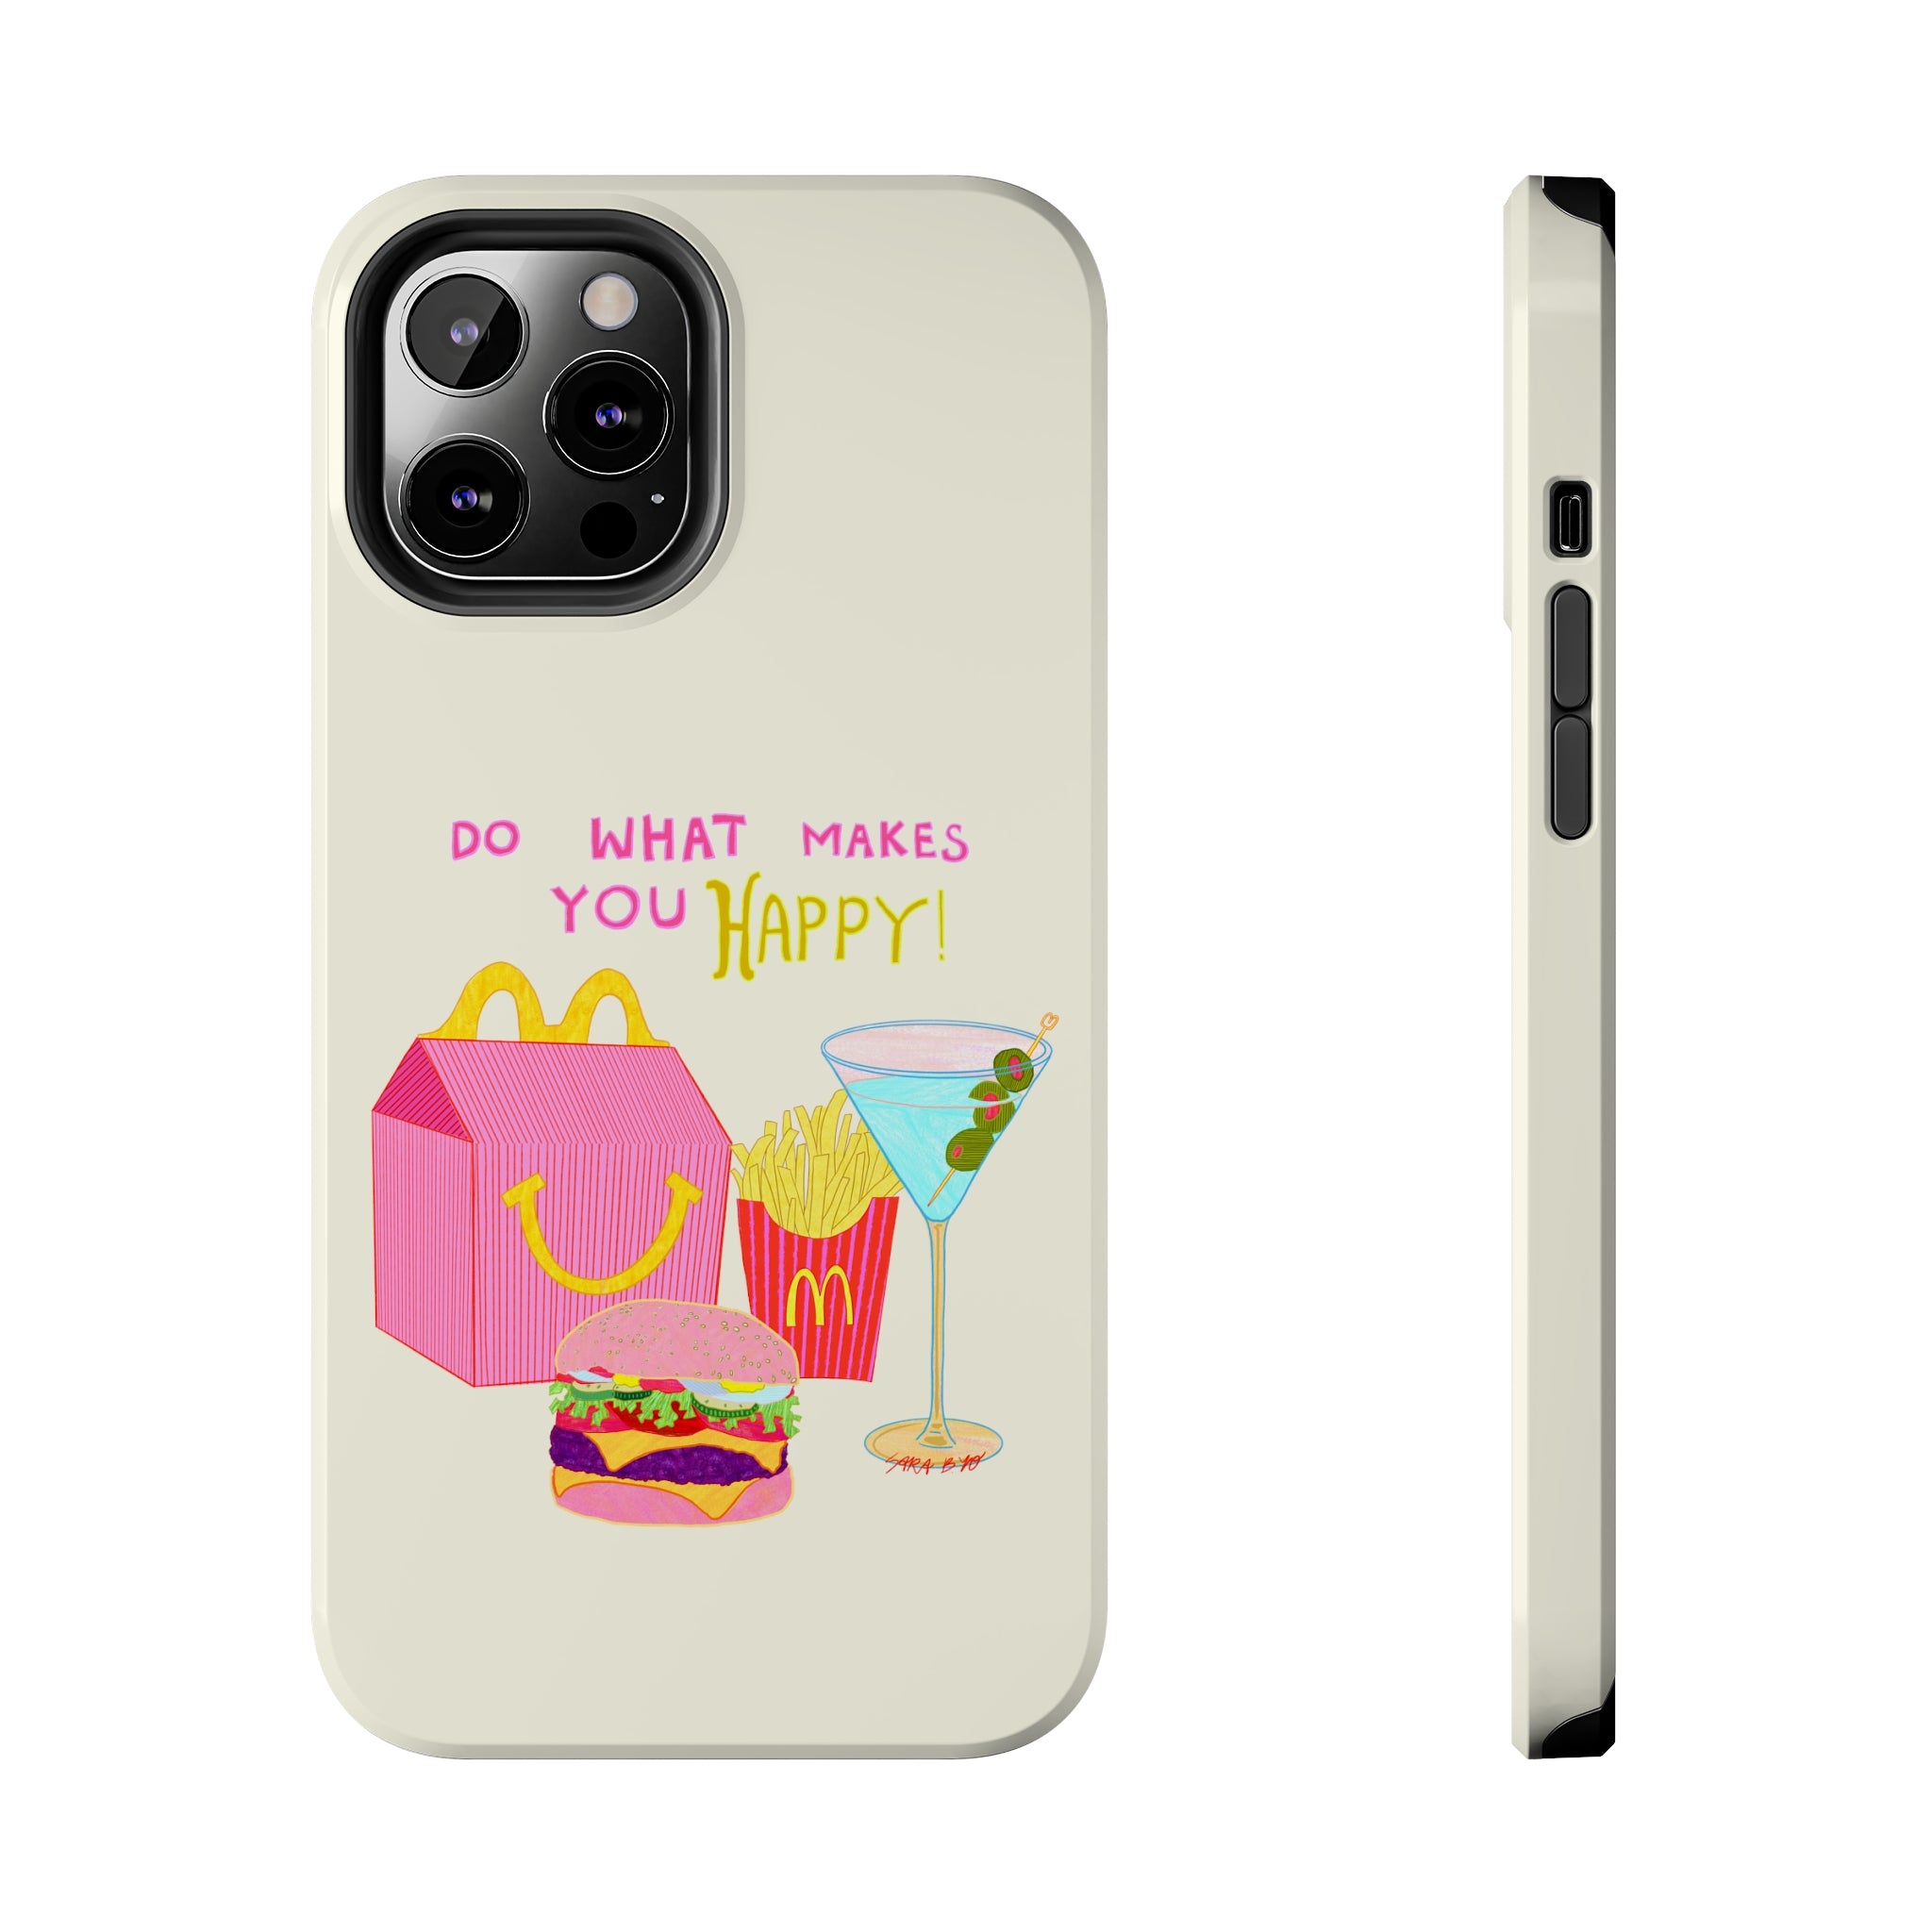 The Happy Phone Case